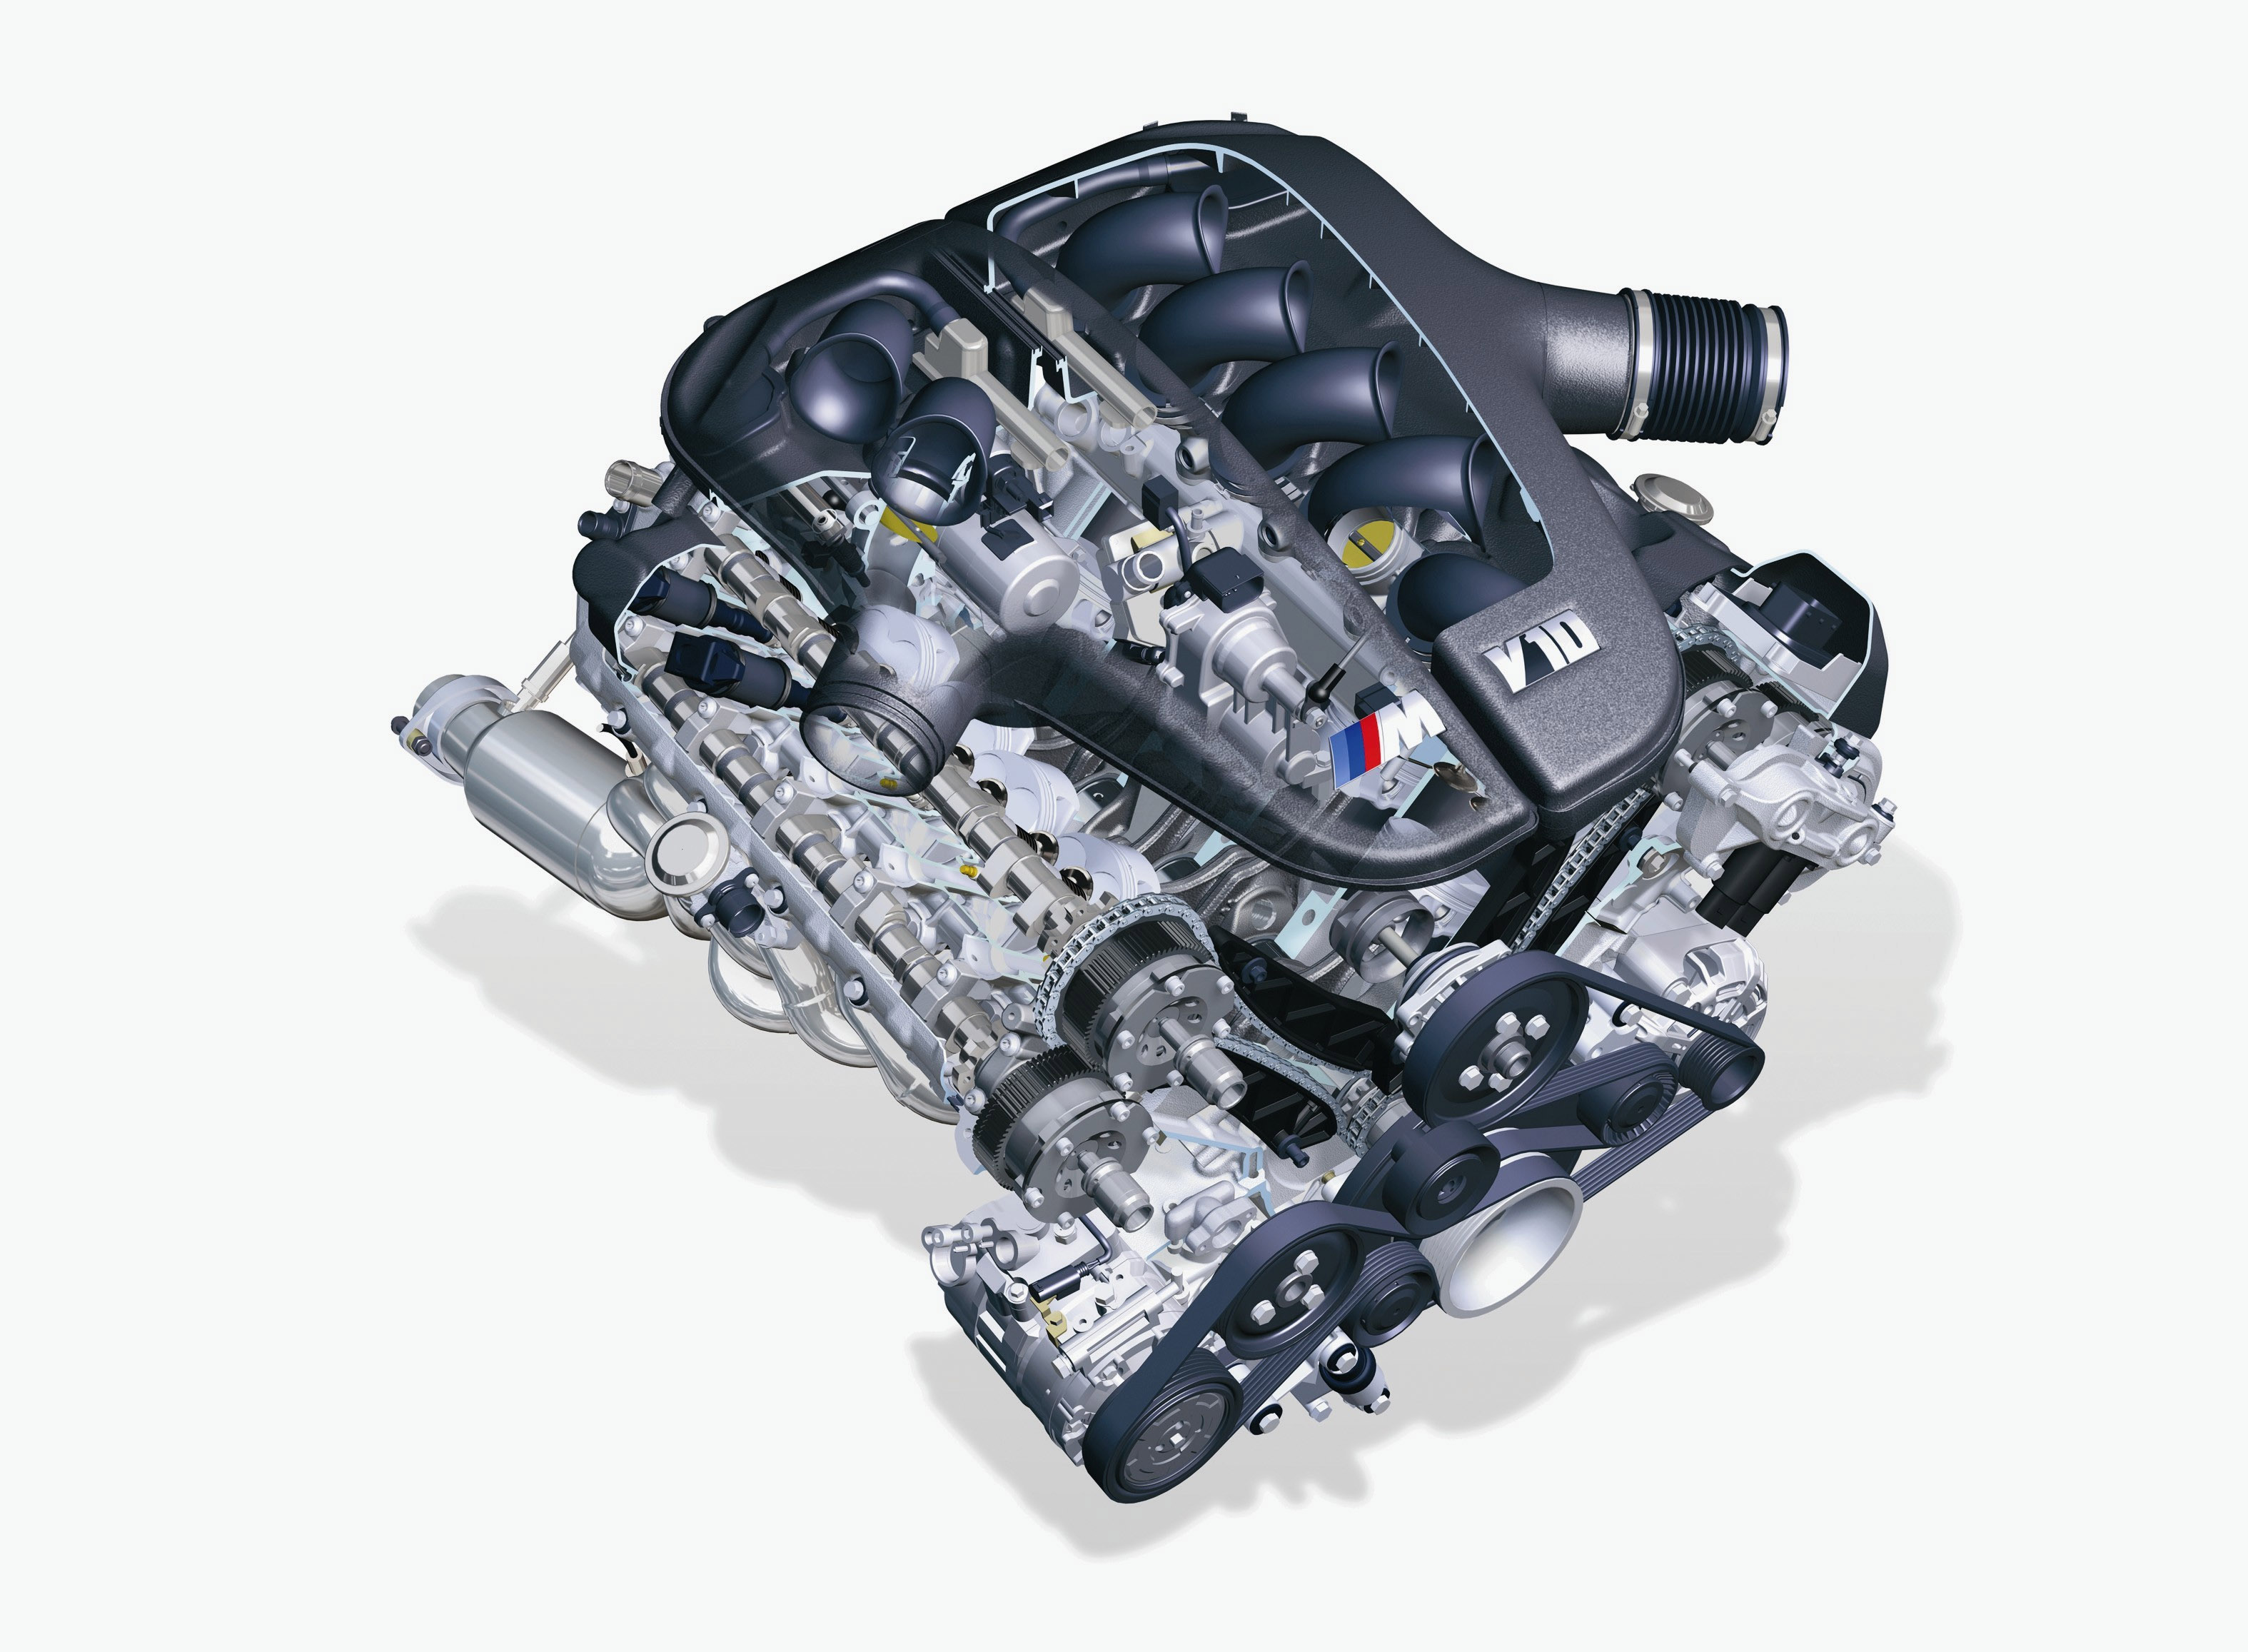 Мотор м 5. V10 BMW m5 мотор. S85 BMW мотор. Мотор v10 m5 e60. BMW m5 e60 мотор.